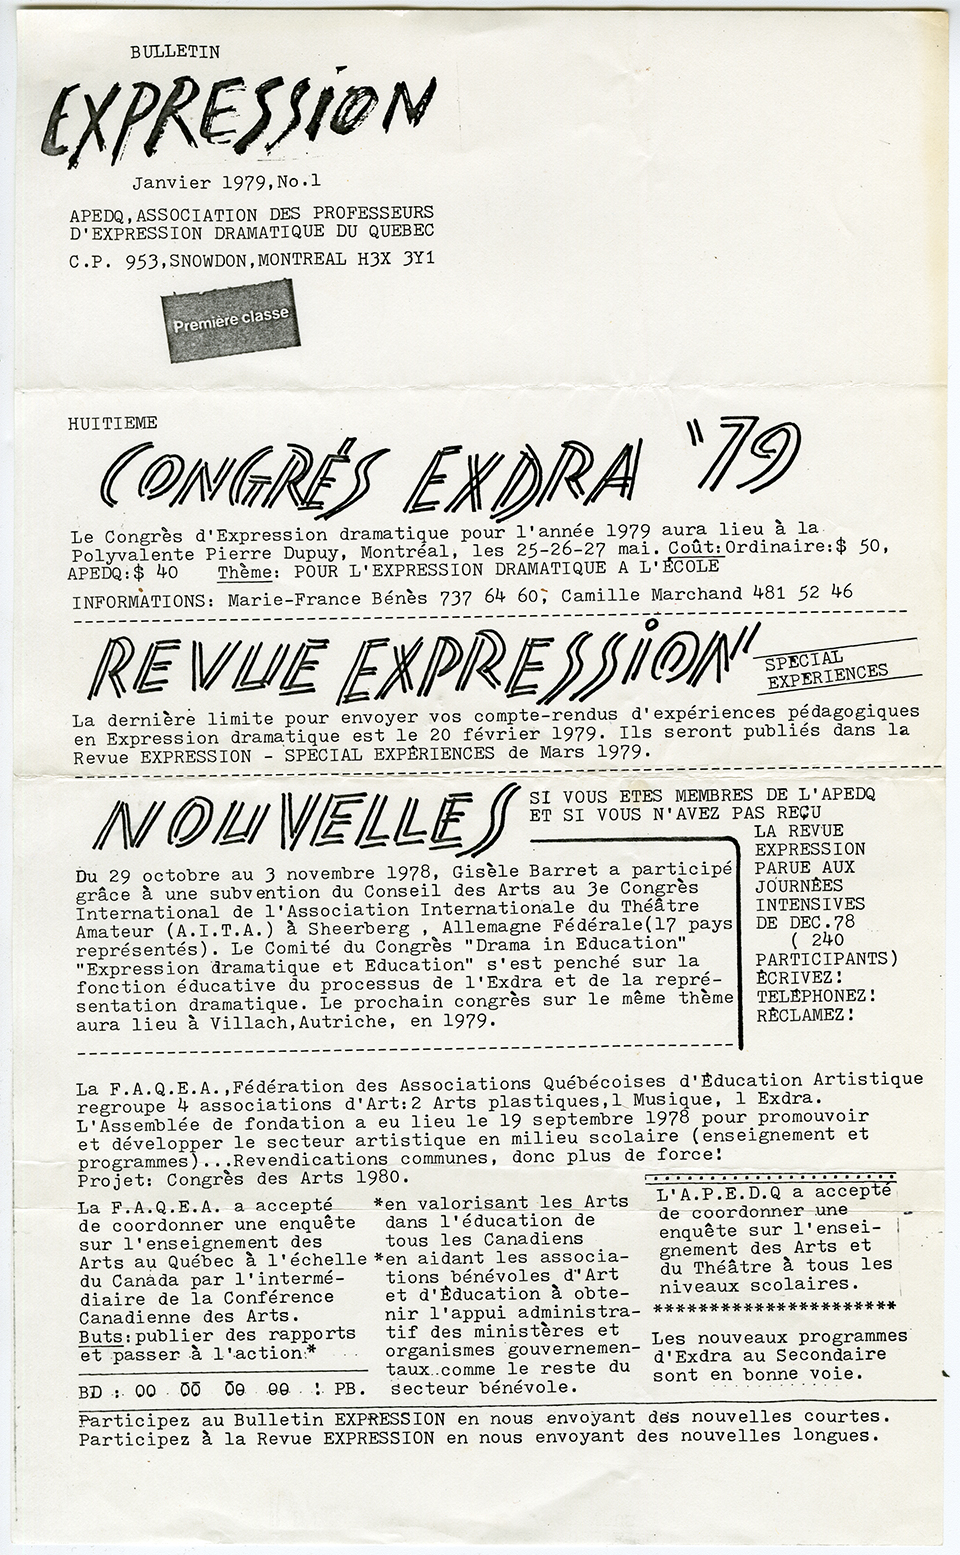 Bulletin EXPRESSION, janvier 1979. Archives UdeM, P0419-K-3-D0002